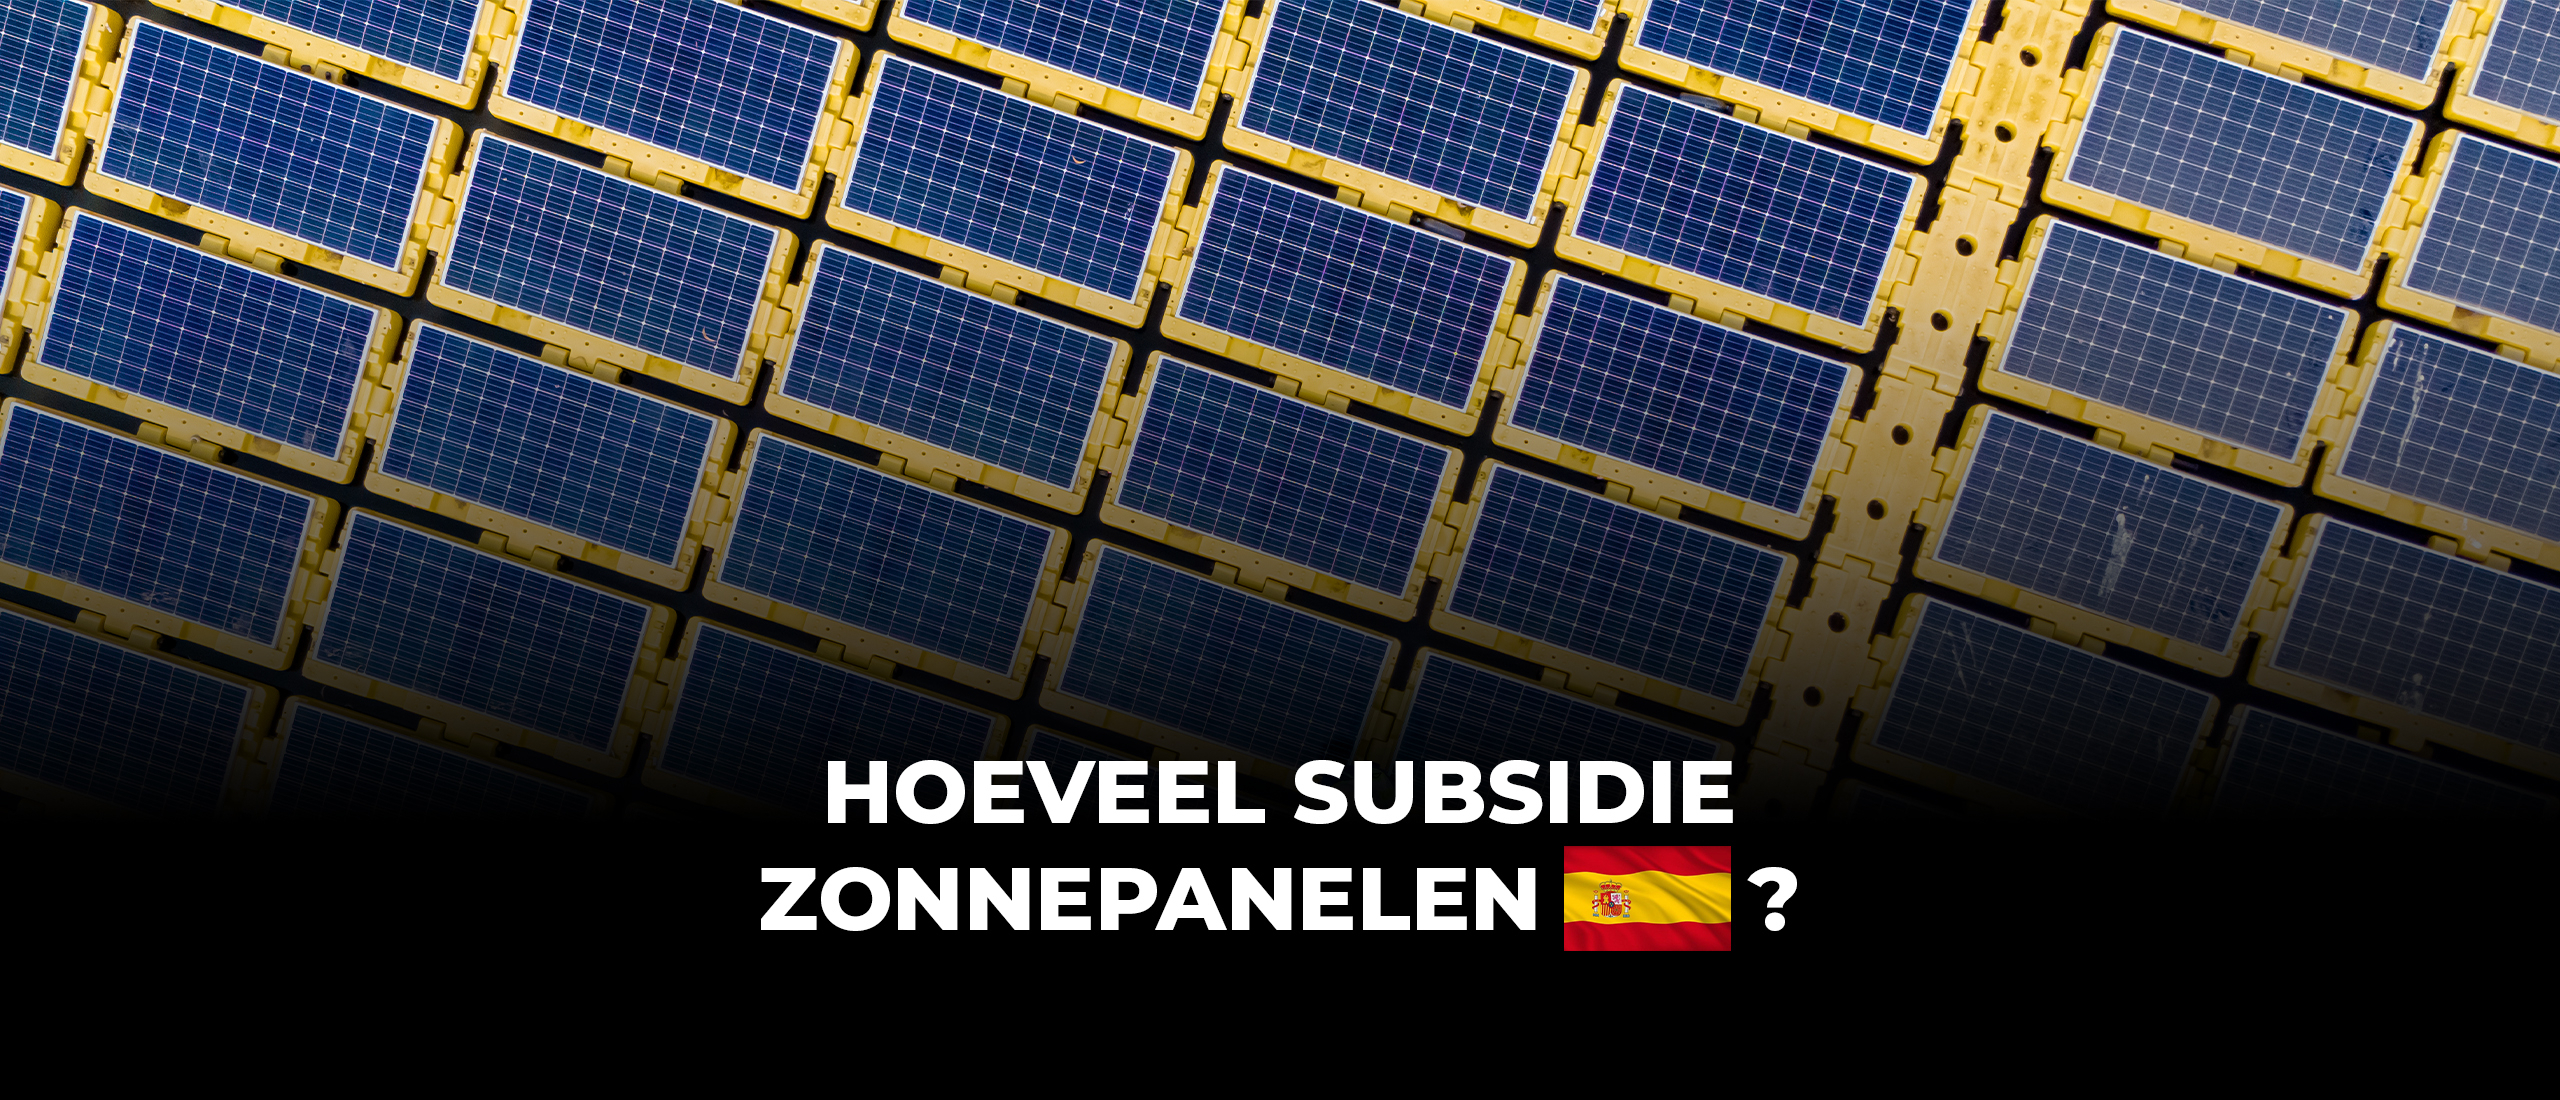 Hoeveel subsidie op zonnepanelen